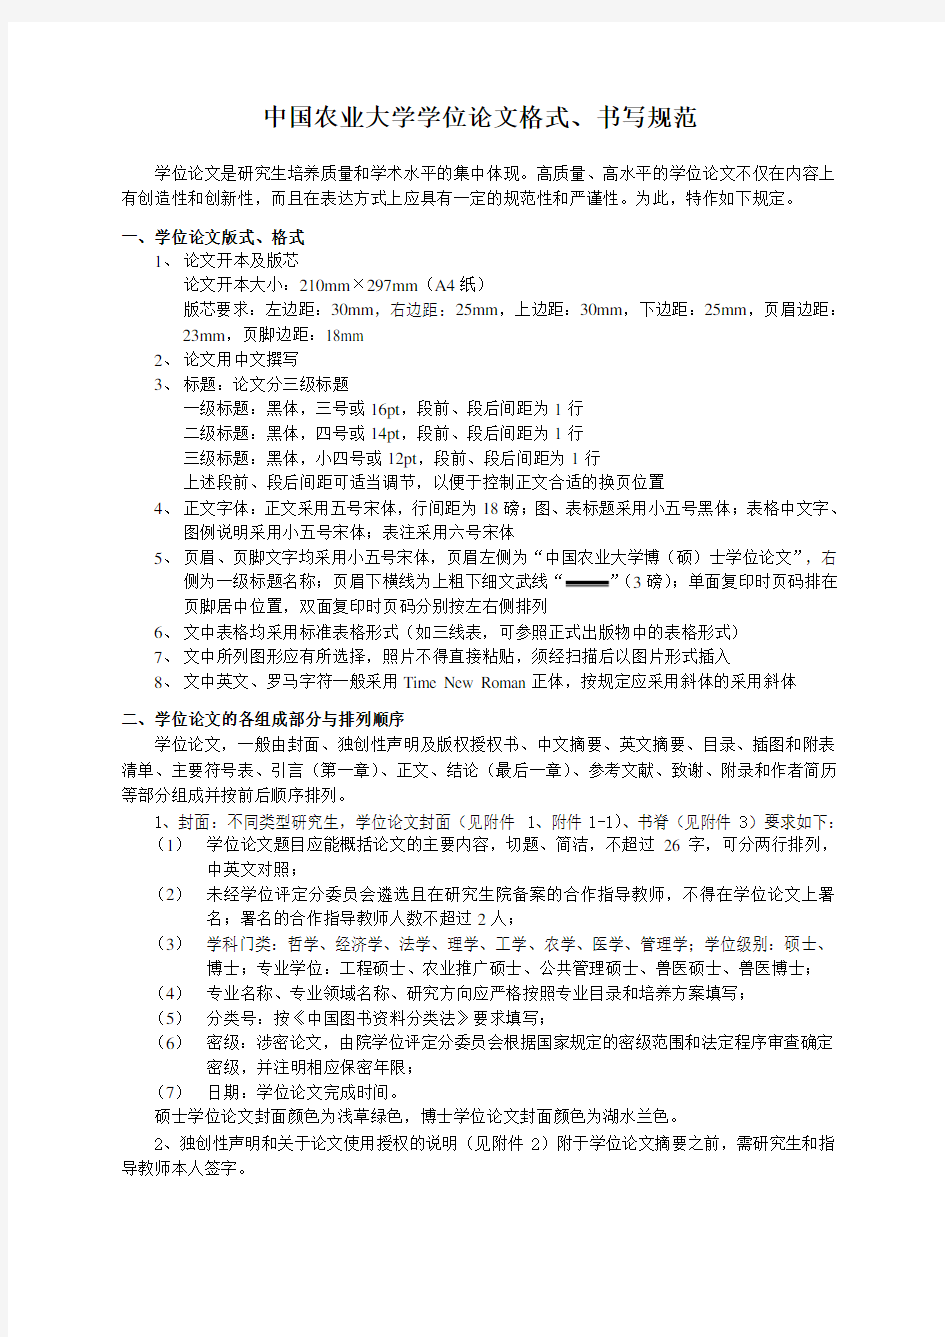 中国农业大学学位论文格式、书写规范(最新版).